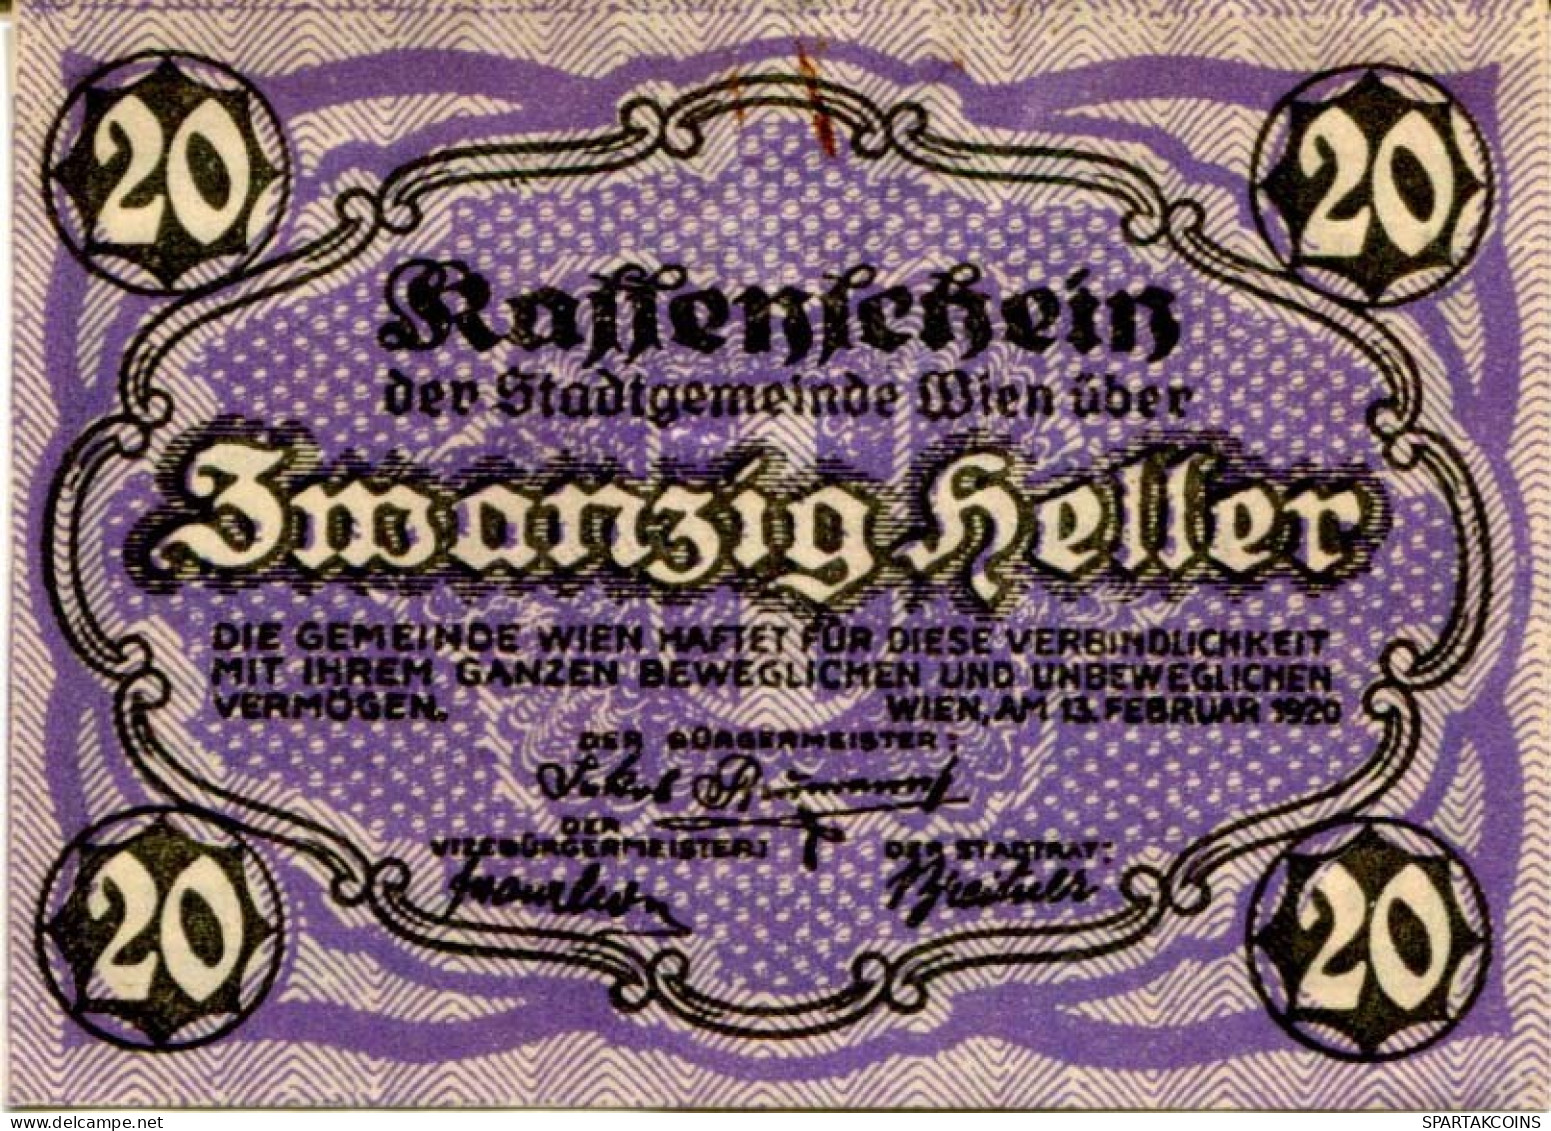 20 HELLER 1920 Stadt Wien Österreich Notgeld Papiergeld Banknote #PL570 - [11] Local Banknote Issues